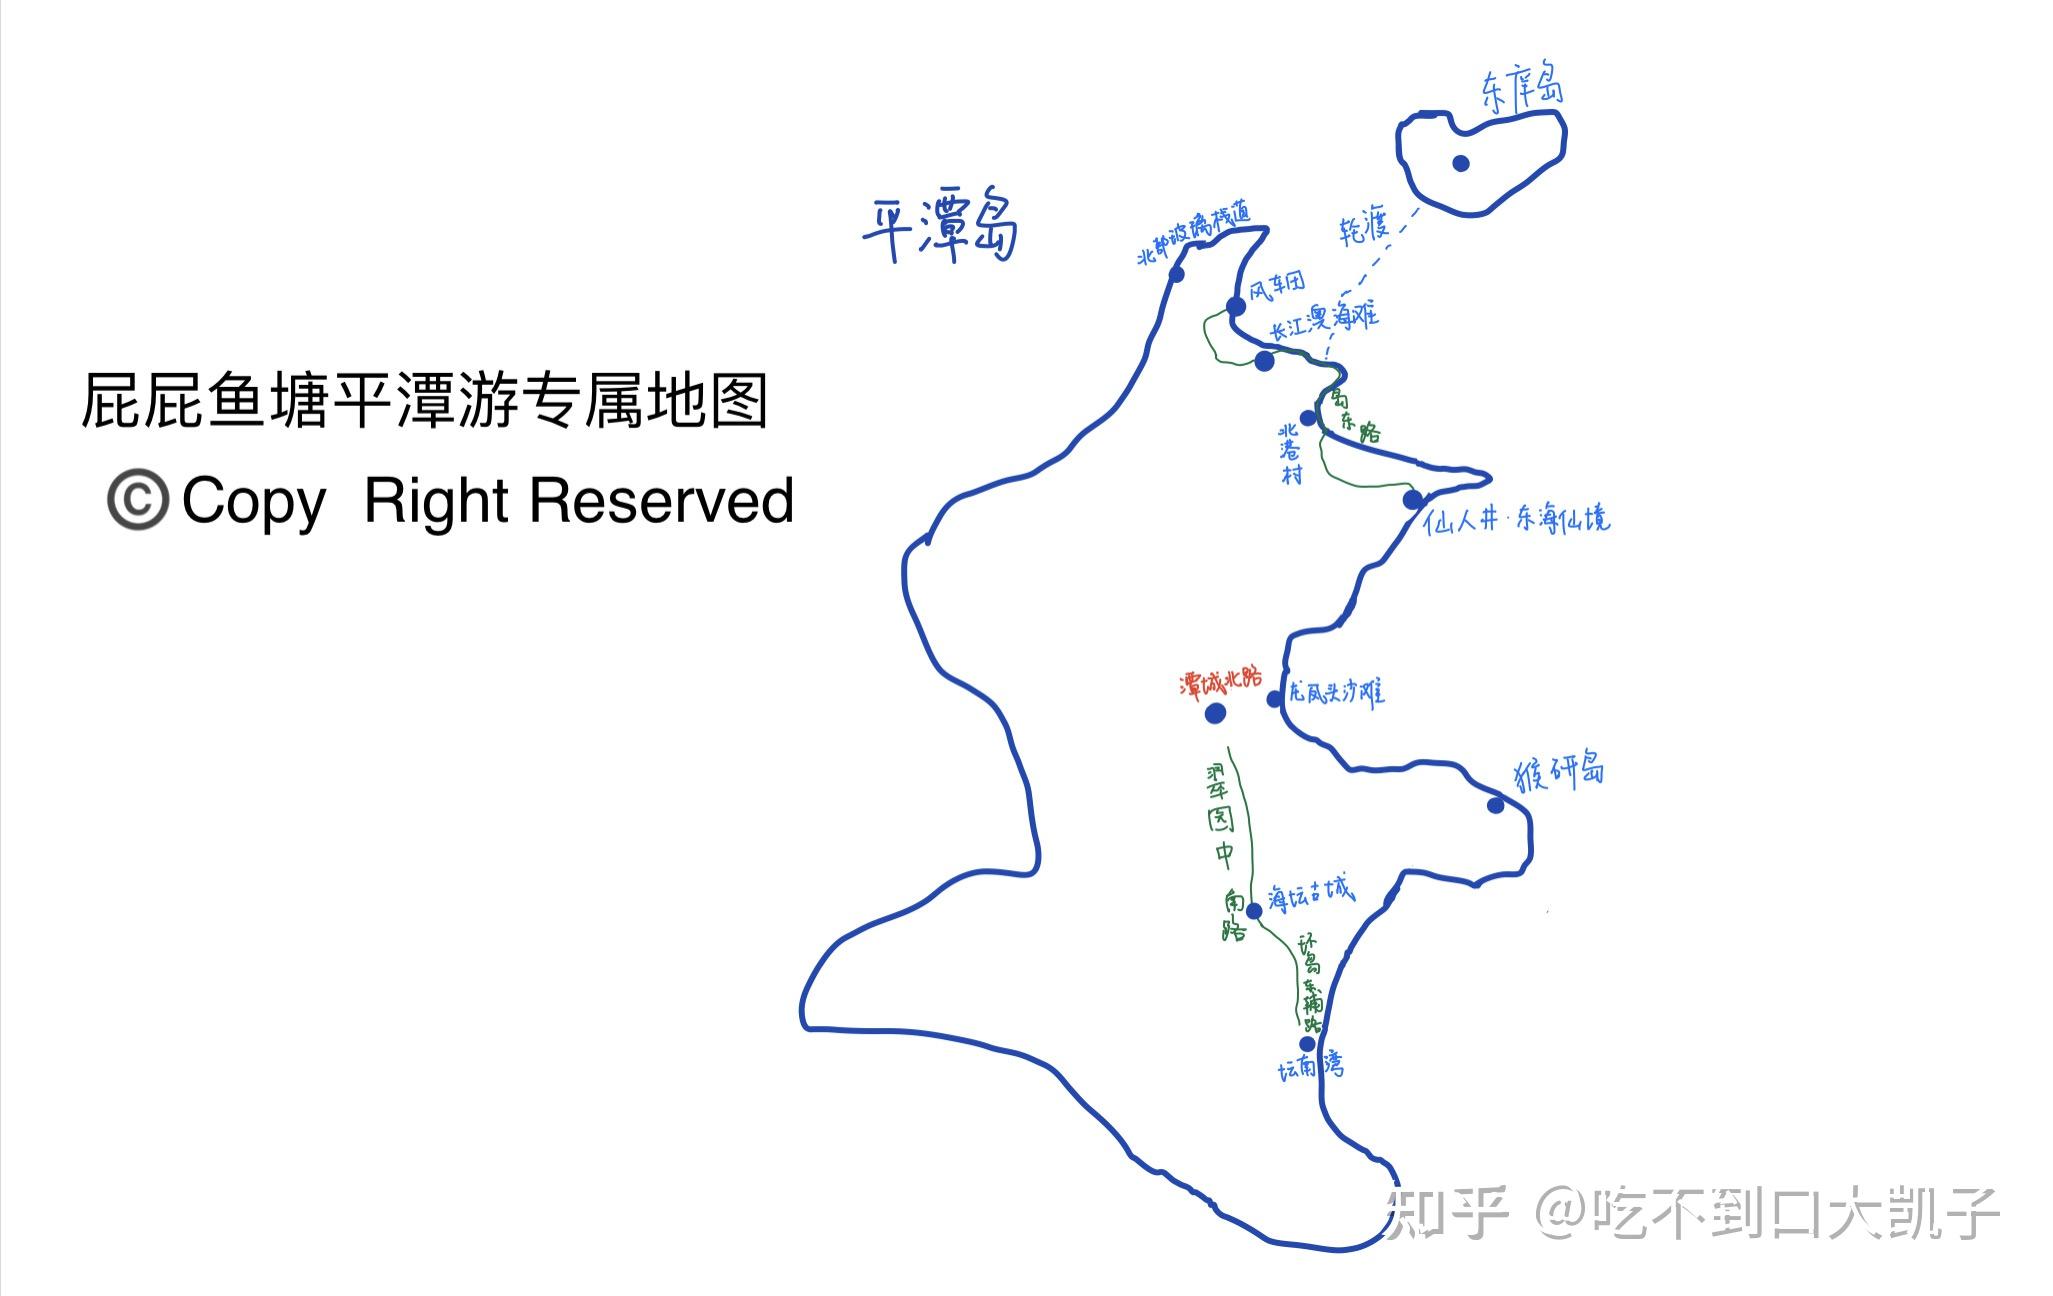 平潭岛旅行地图高清图片